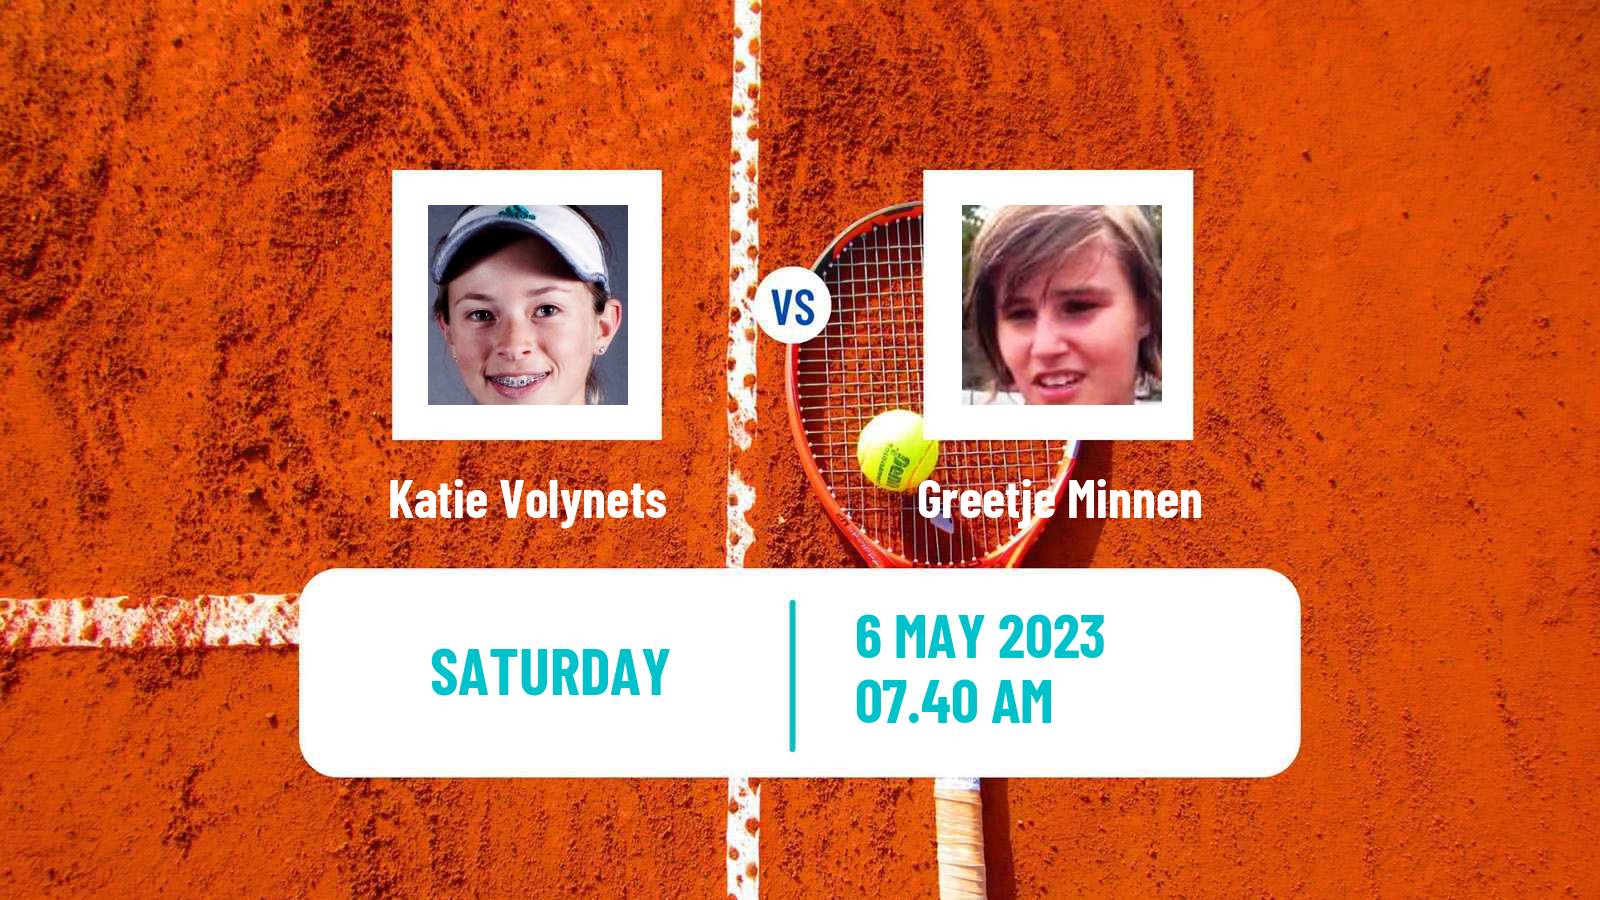 Tennis ATP Challenger Katie Volynets - Greetje Minnen